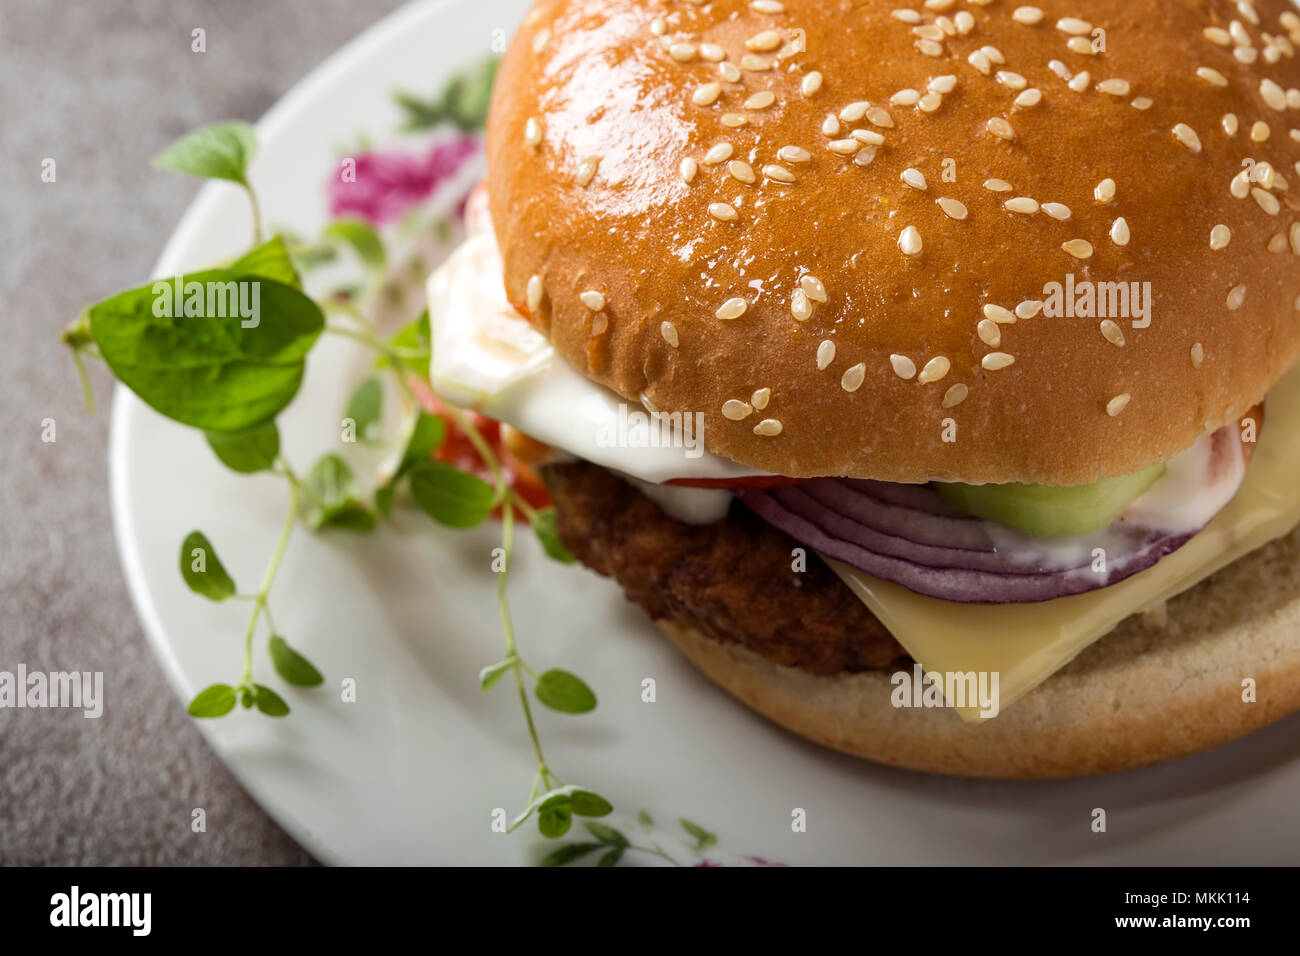 Blick von oben auf einen Cheeseburger mit Tomaten und Mayonnaise Sauce auf dem Teller mit grünen Oregano Blätter Stockfoto